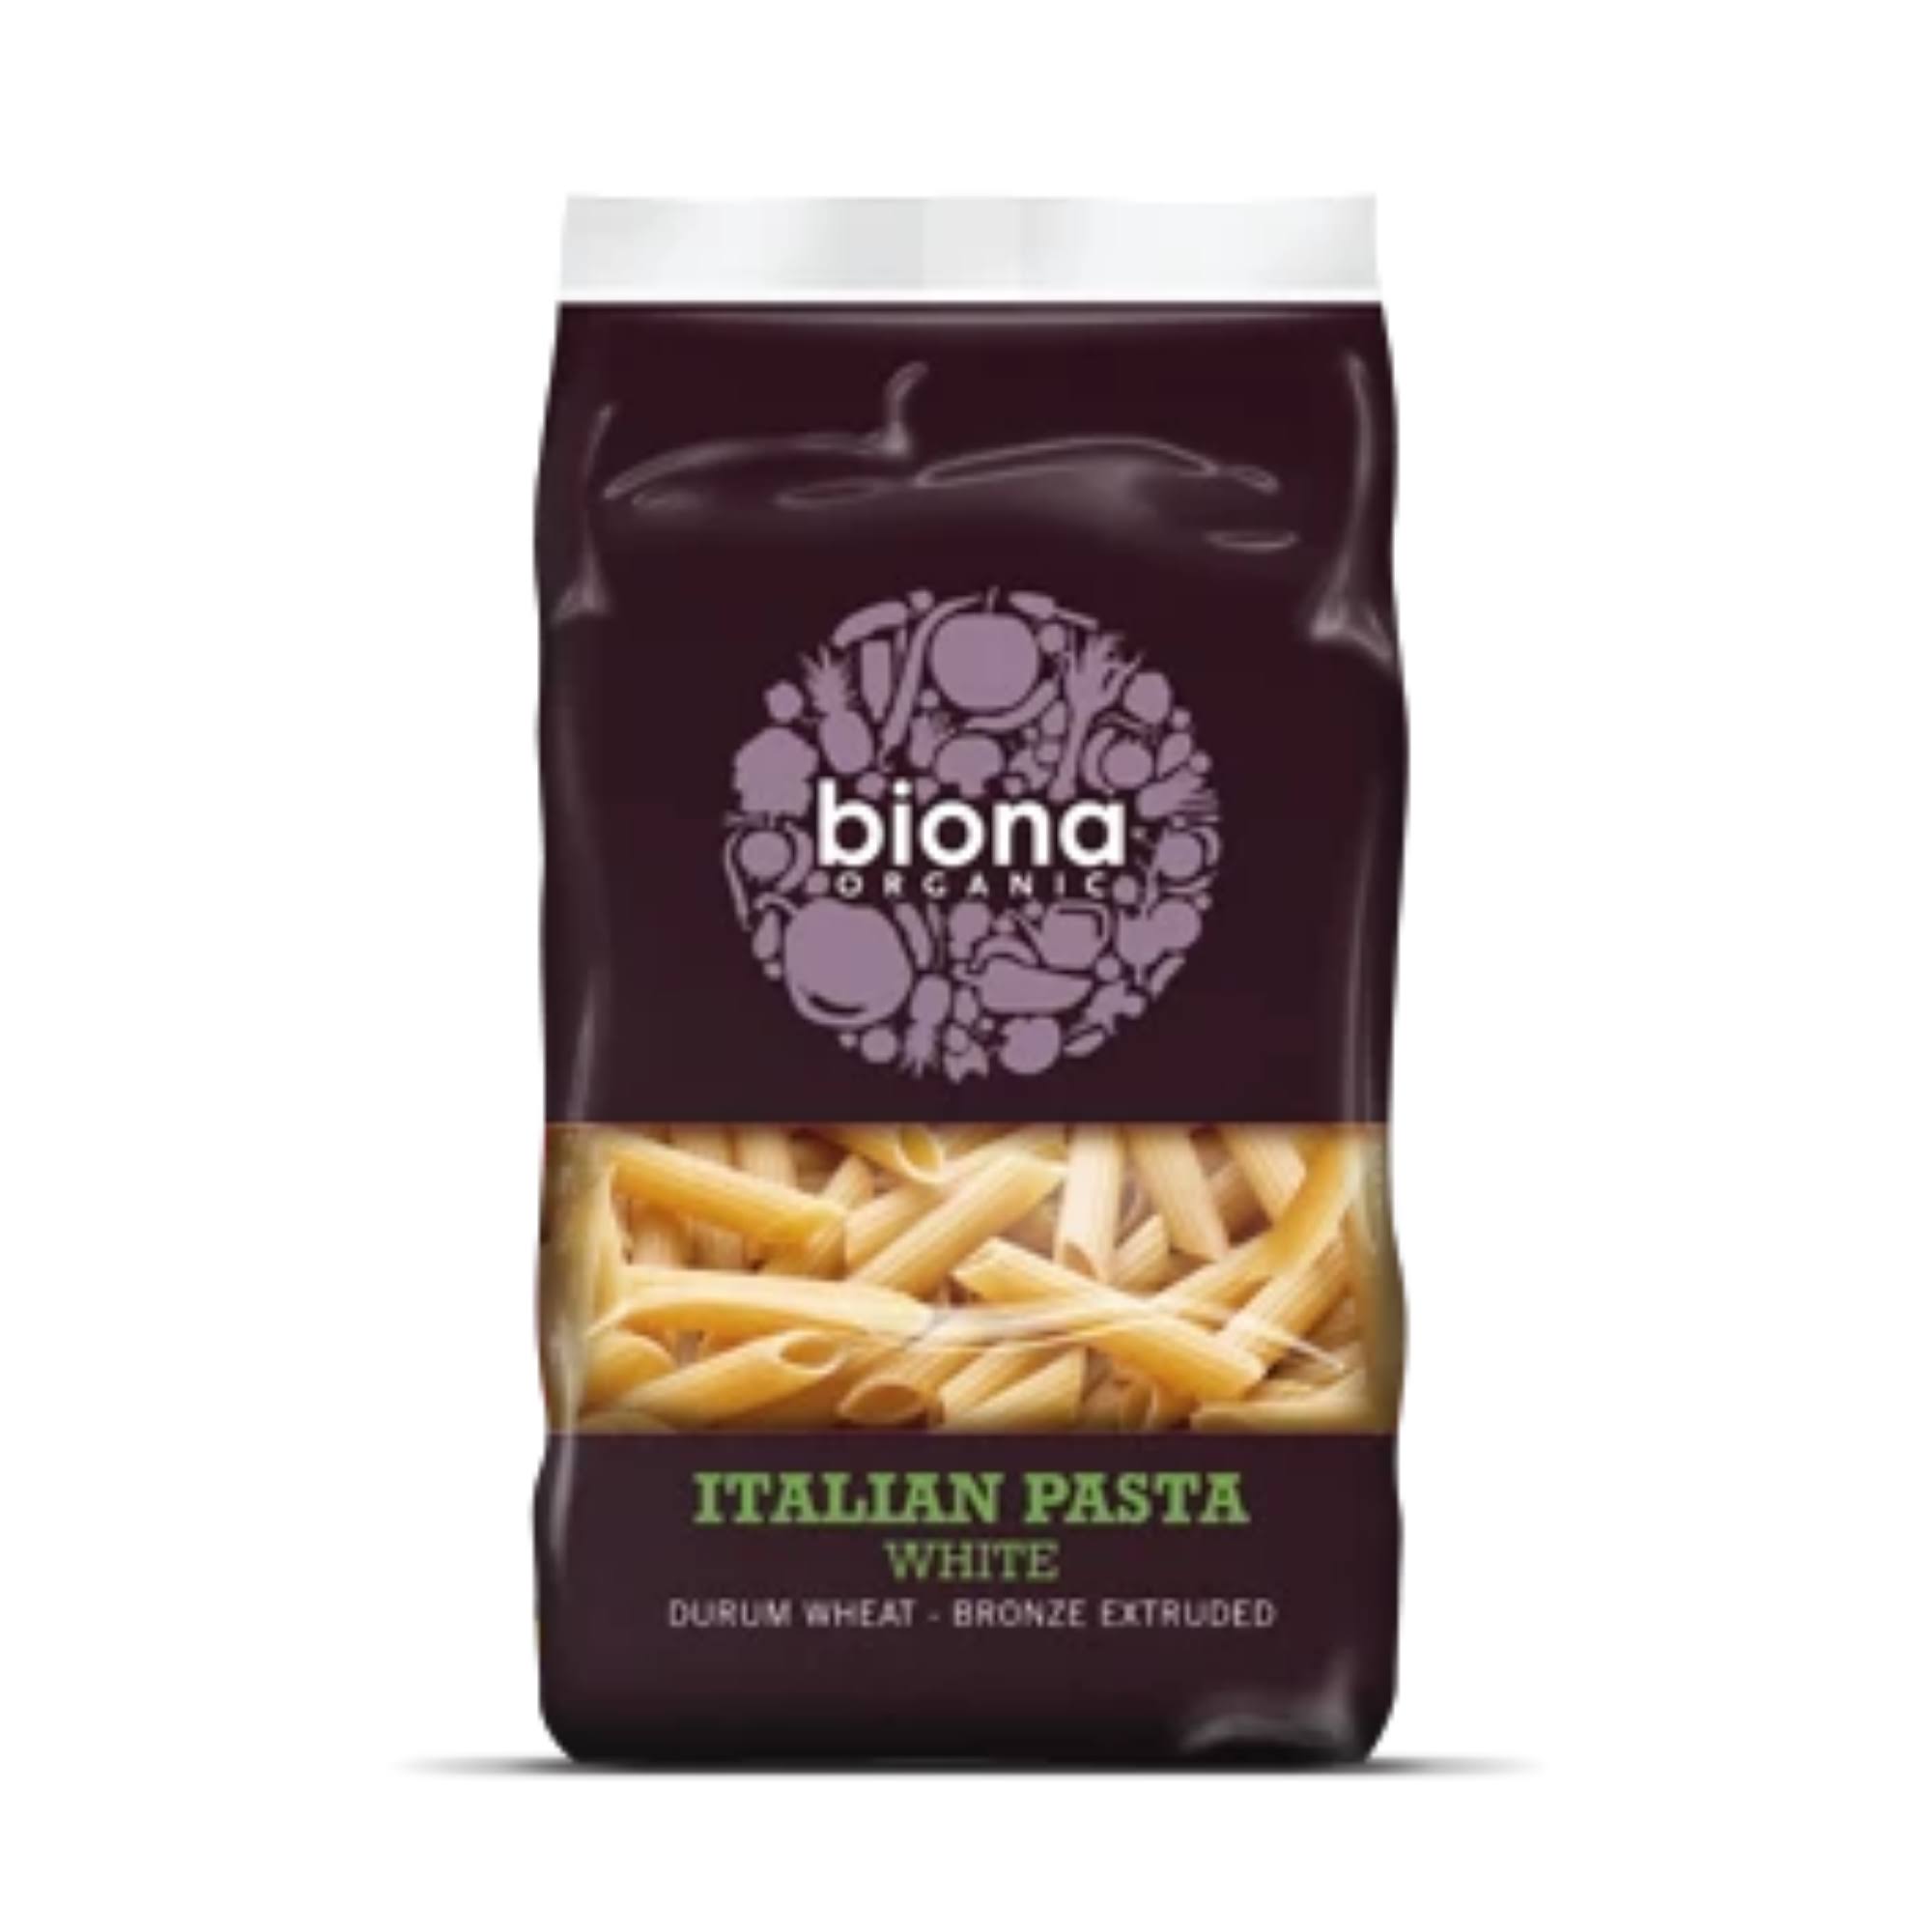 Biona Organic White Italian Pasta - 500g